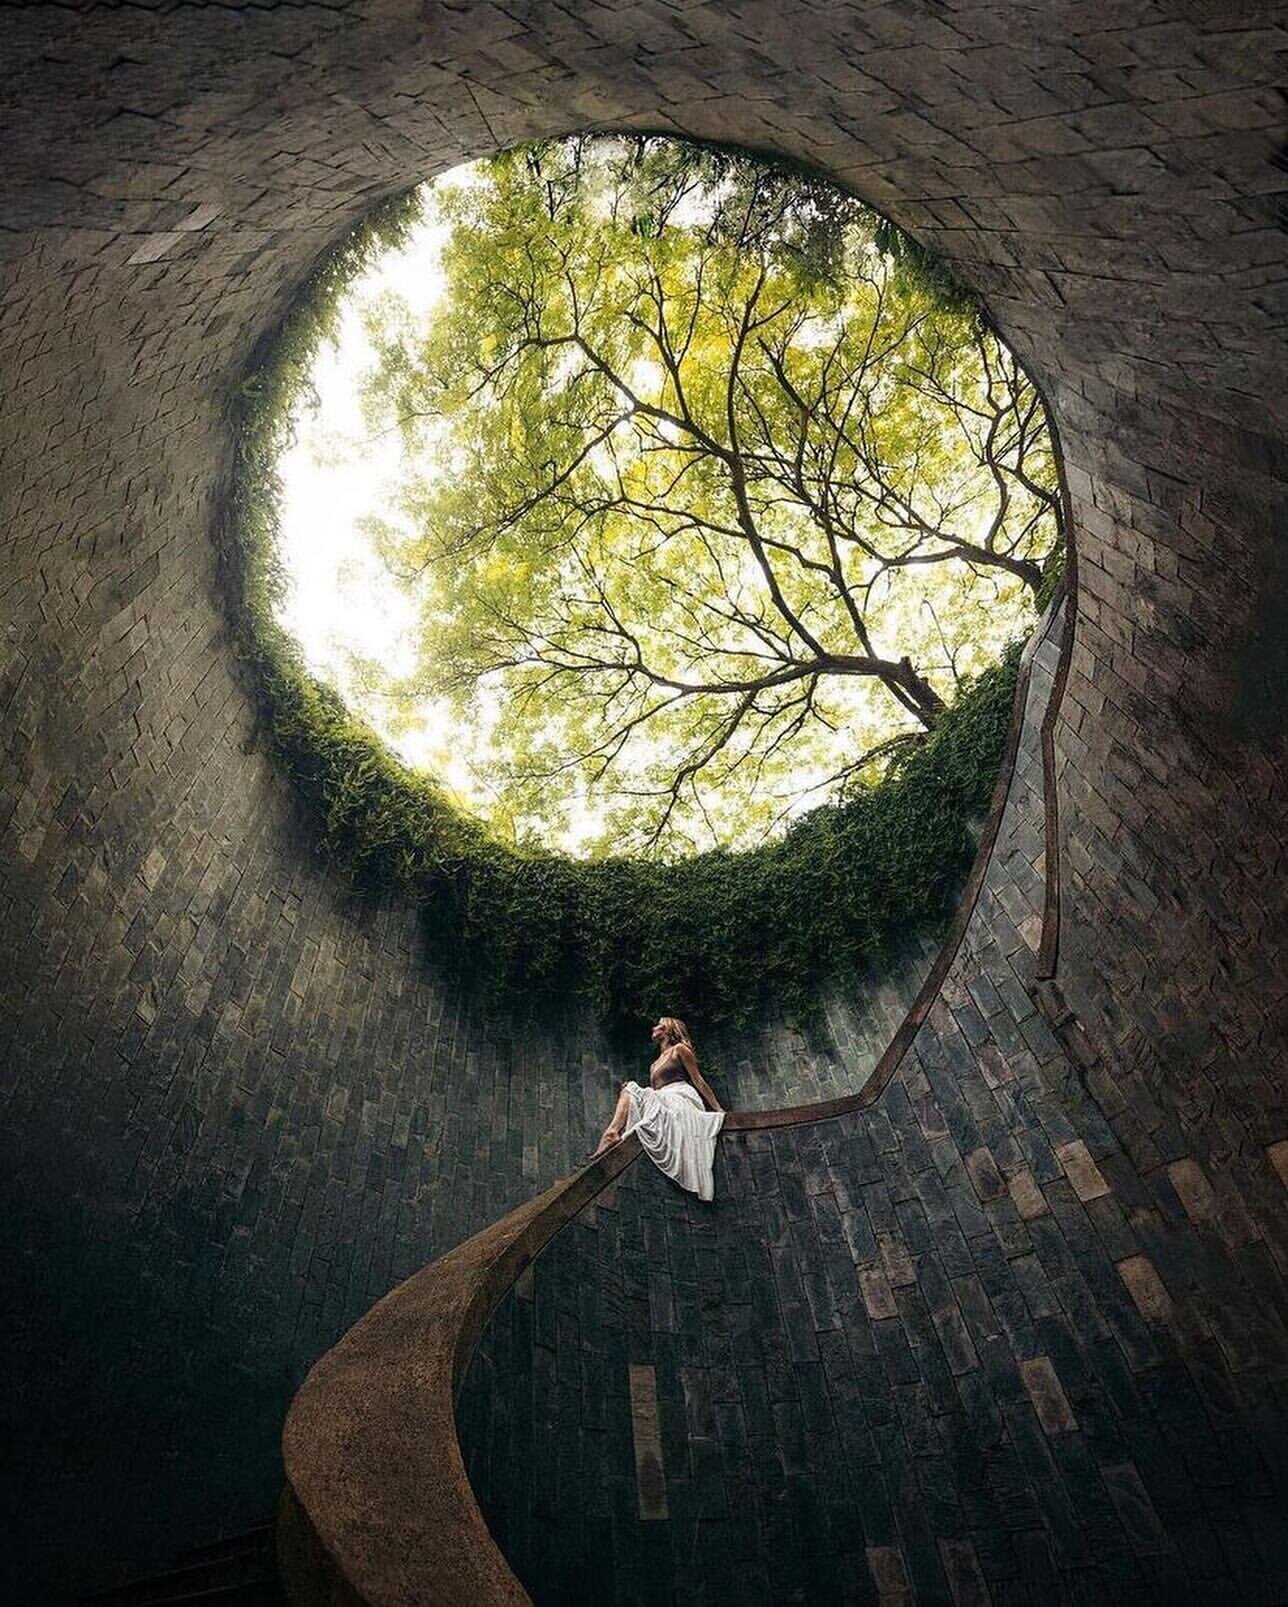 Công viên Fort Canning nổi tiếng với đường hầm cây Fort Canning Tree Tunnel, góc chụp hình nổi tiếng nhất mạng xã hội ở Singapore.